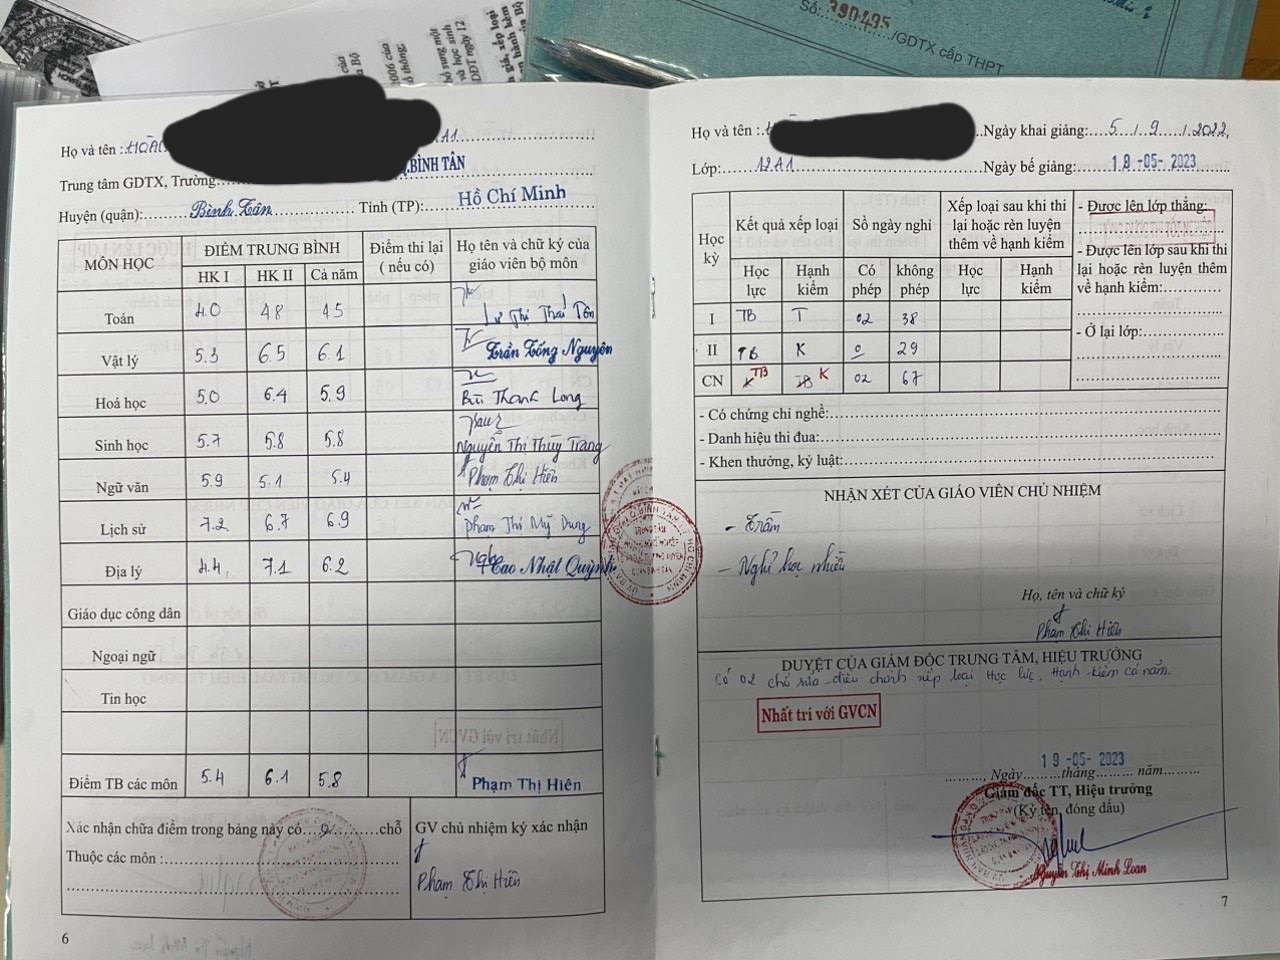 Học sinh H.C.G được Trung tâm GDNN-GDTX quận Bình Tân xác nhận không đủ điều kiện dự thi tốt nghiệp THPT song vẫn có số báo danh, dự thi và đã tốt nghiệp